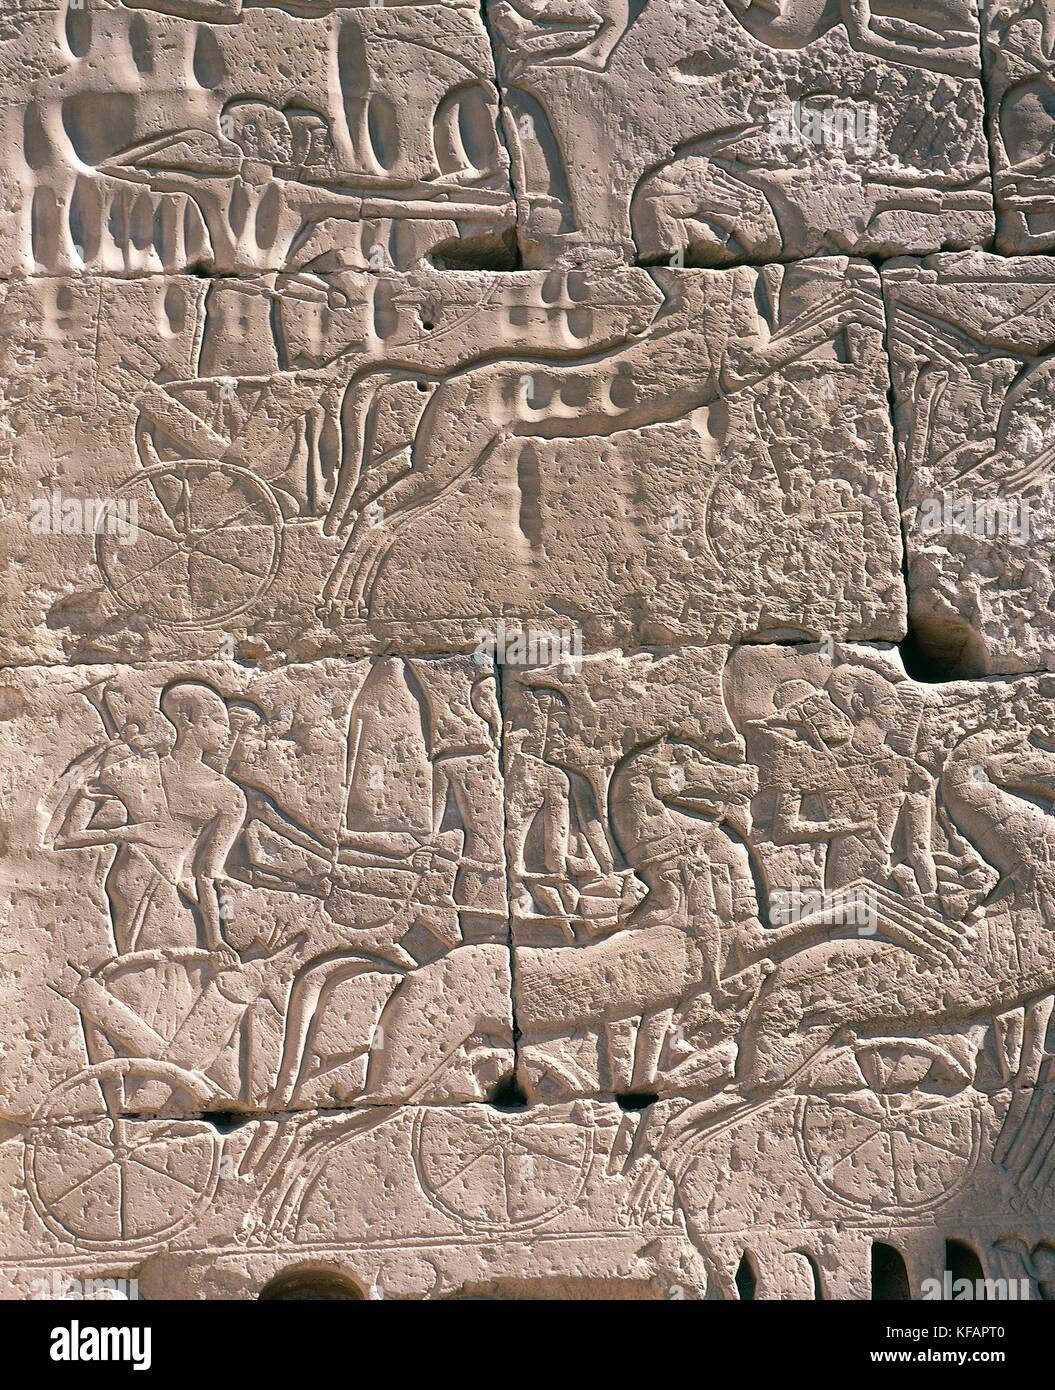 Ramesse III e i suoi arcieri macellazione libici, dettaglio da un rilievo con scene di guerra, posteriore del primo pilone, tempio mortuario di Ramesse III, Medinet Habu, nei pressi di Tebe (patrimonio mondiale dell'unesco, 1979). civiltà egizia, regno di Mezzo, dinastia xx. Foto Stock